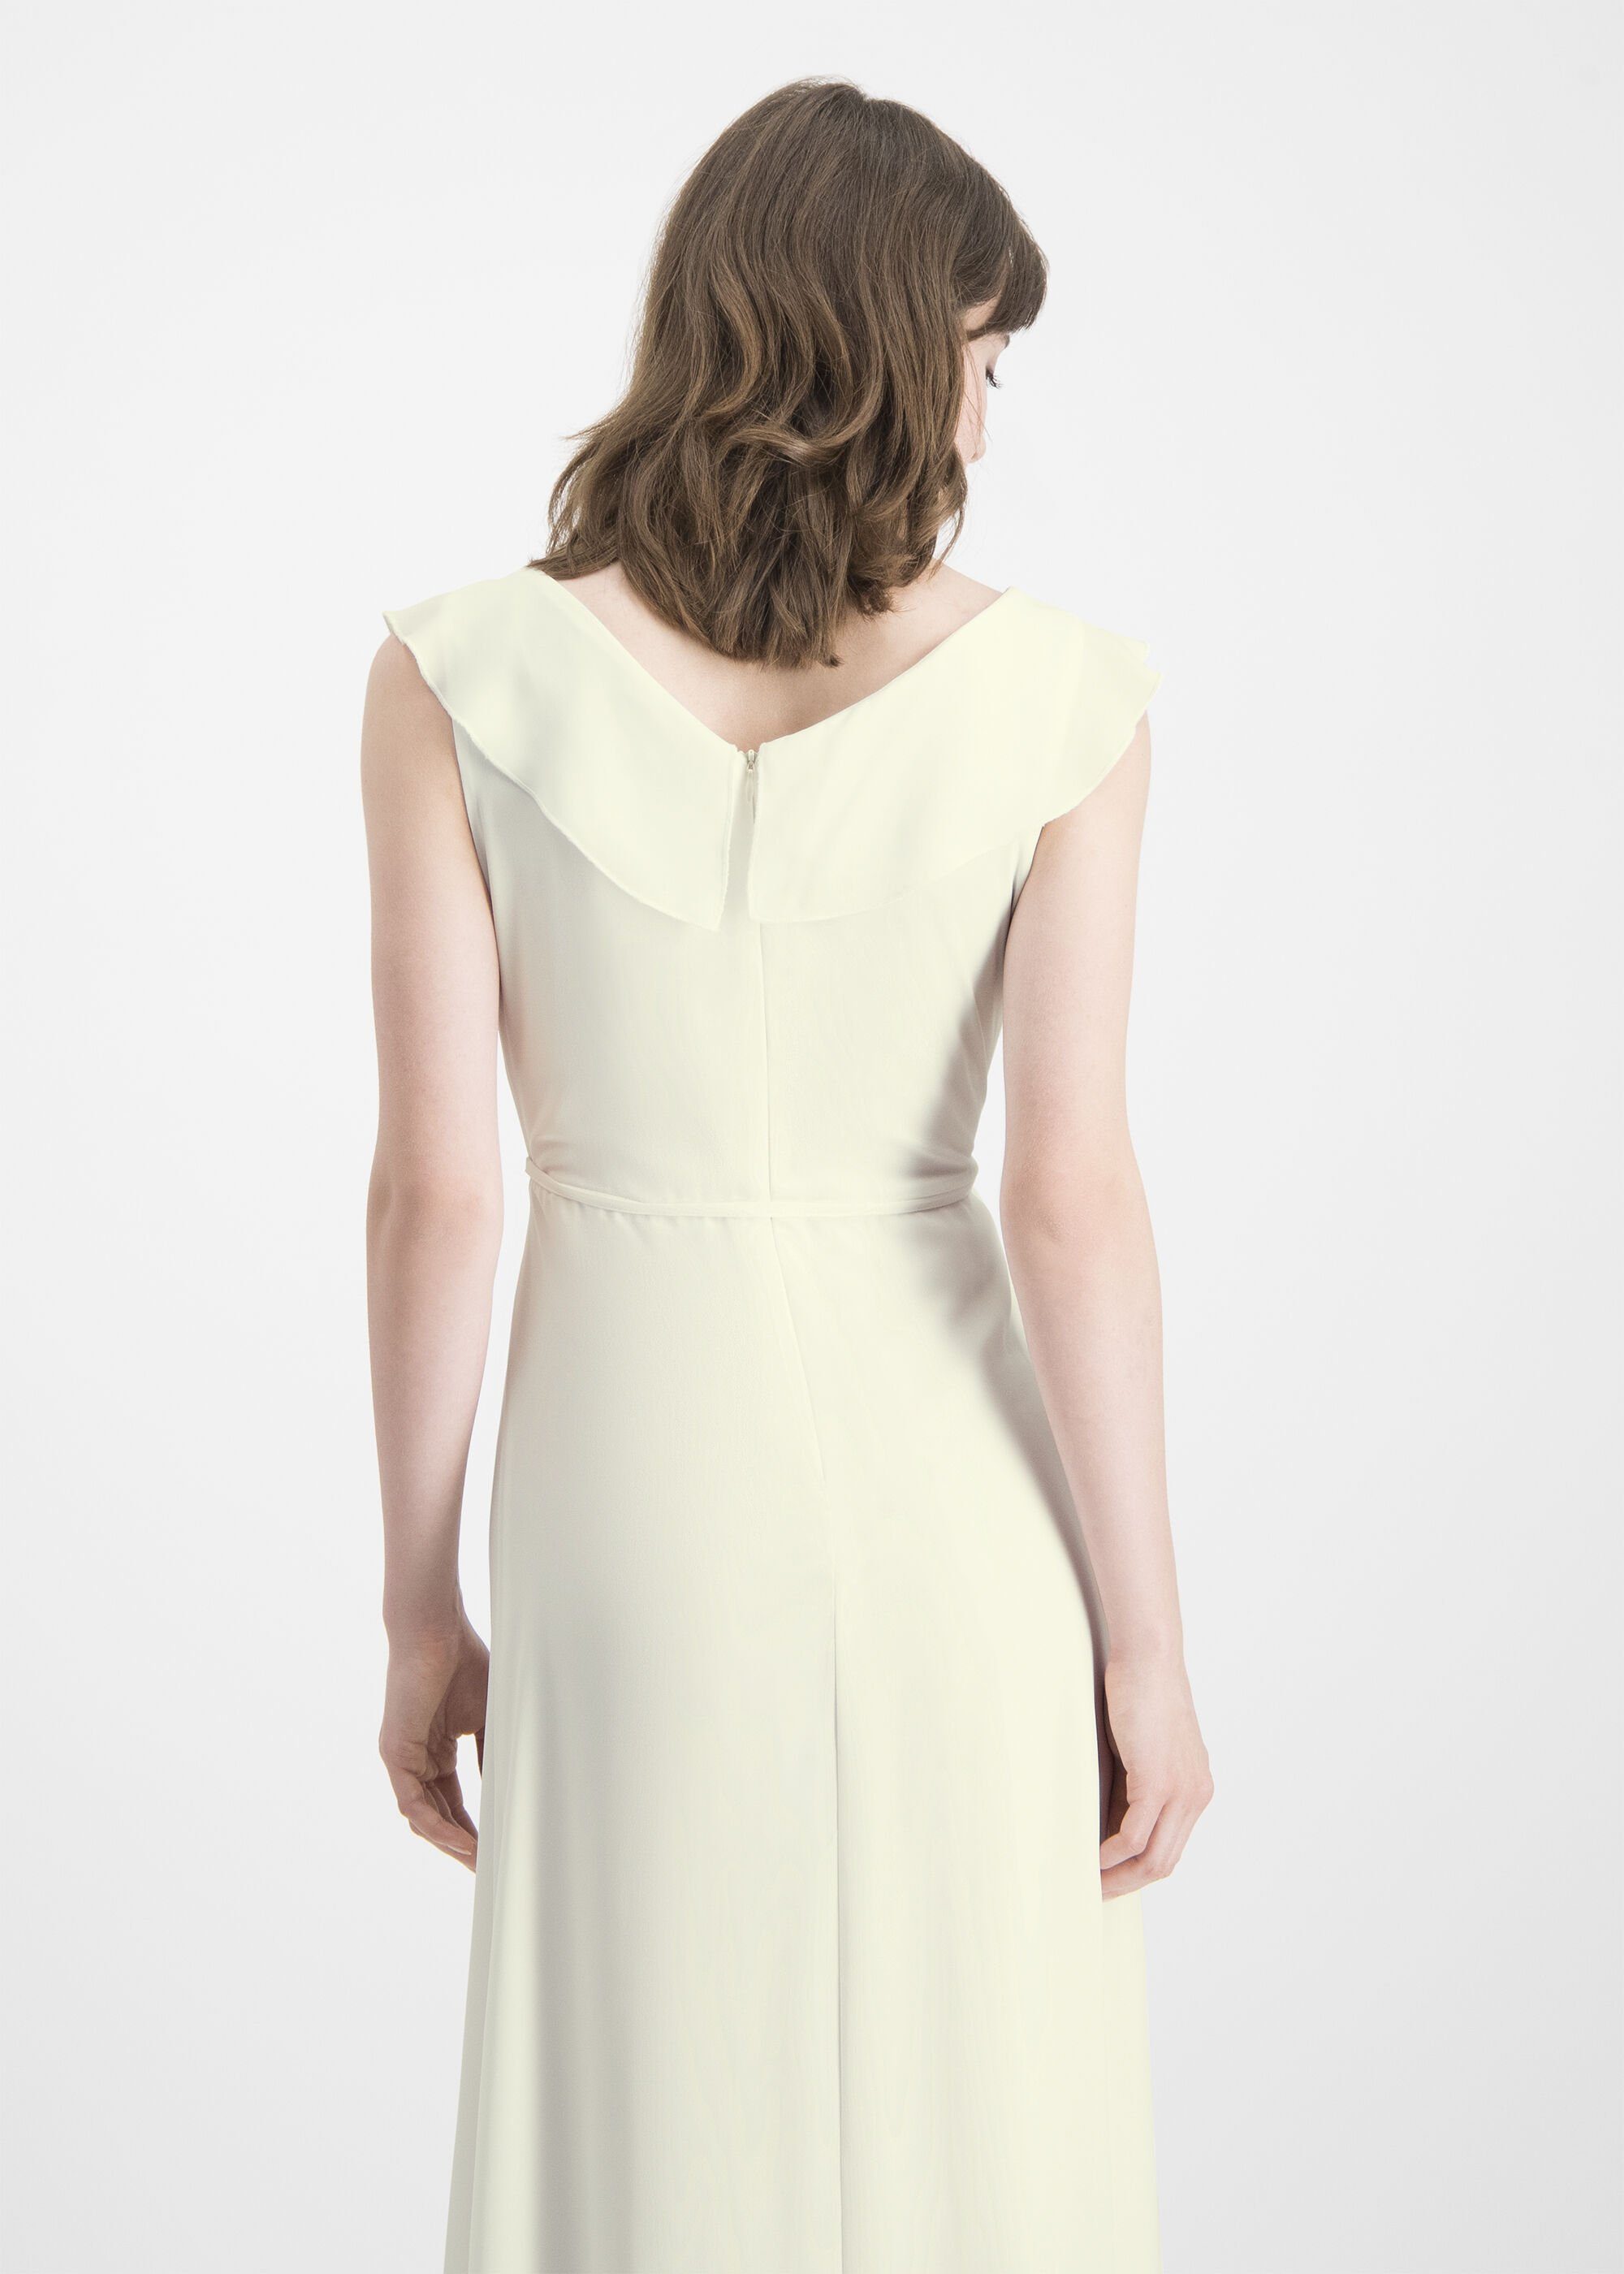 Nicowa A-Linien-Kleid DINOWA mit und asymmetrischen Volants Zierschleife